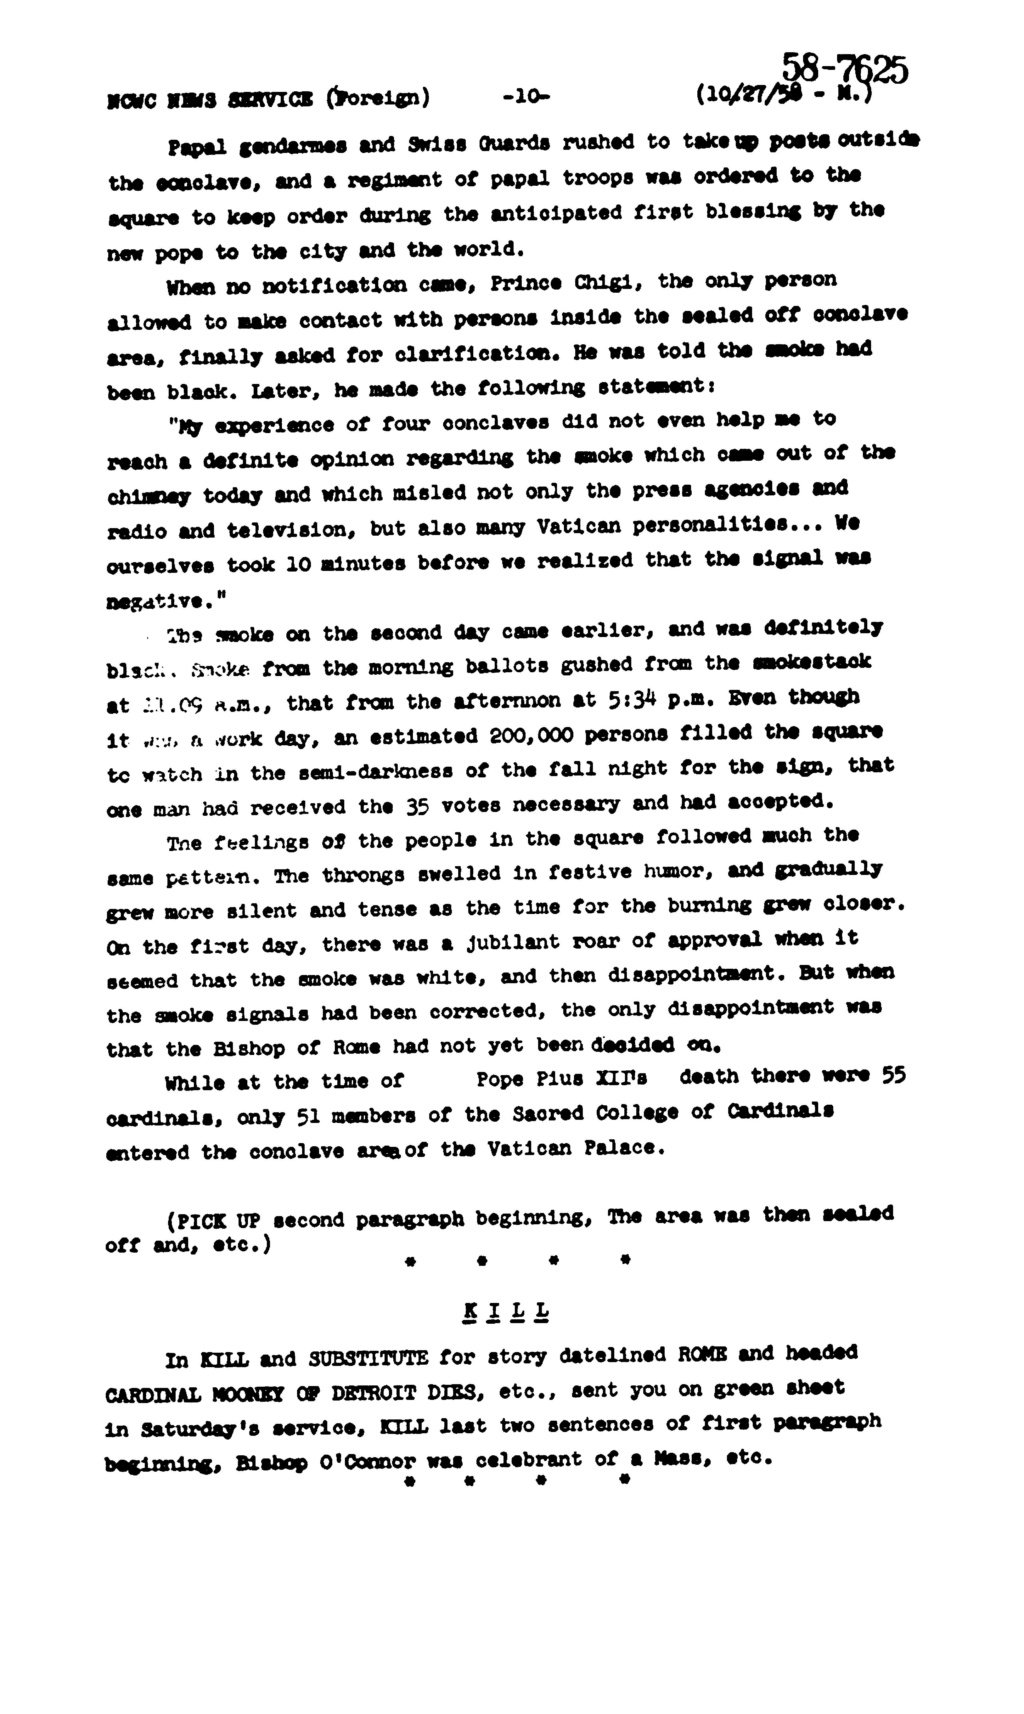 Histoire curieuse ou anecdotique du Dimanche 26 Octobre 1958, rapportée dans le Catholic News Service du 27 Concla16